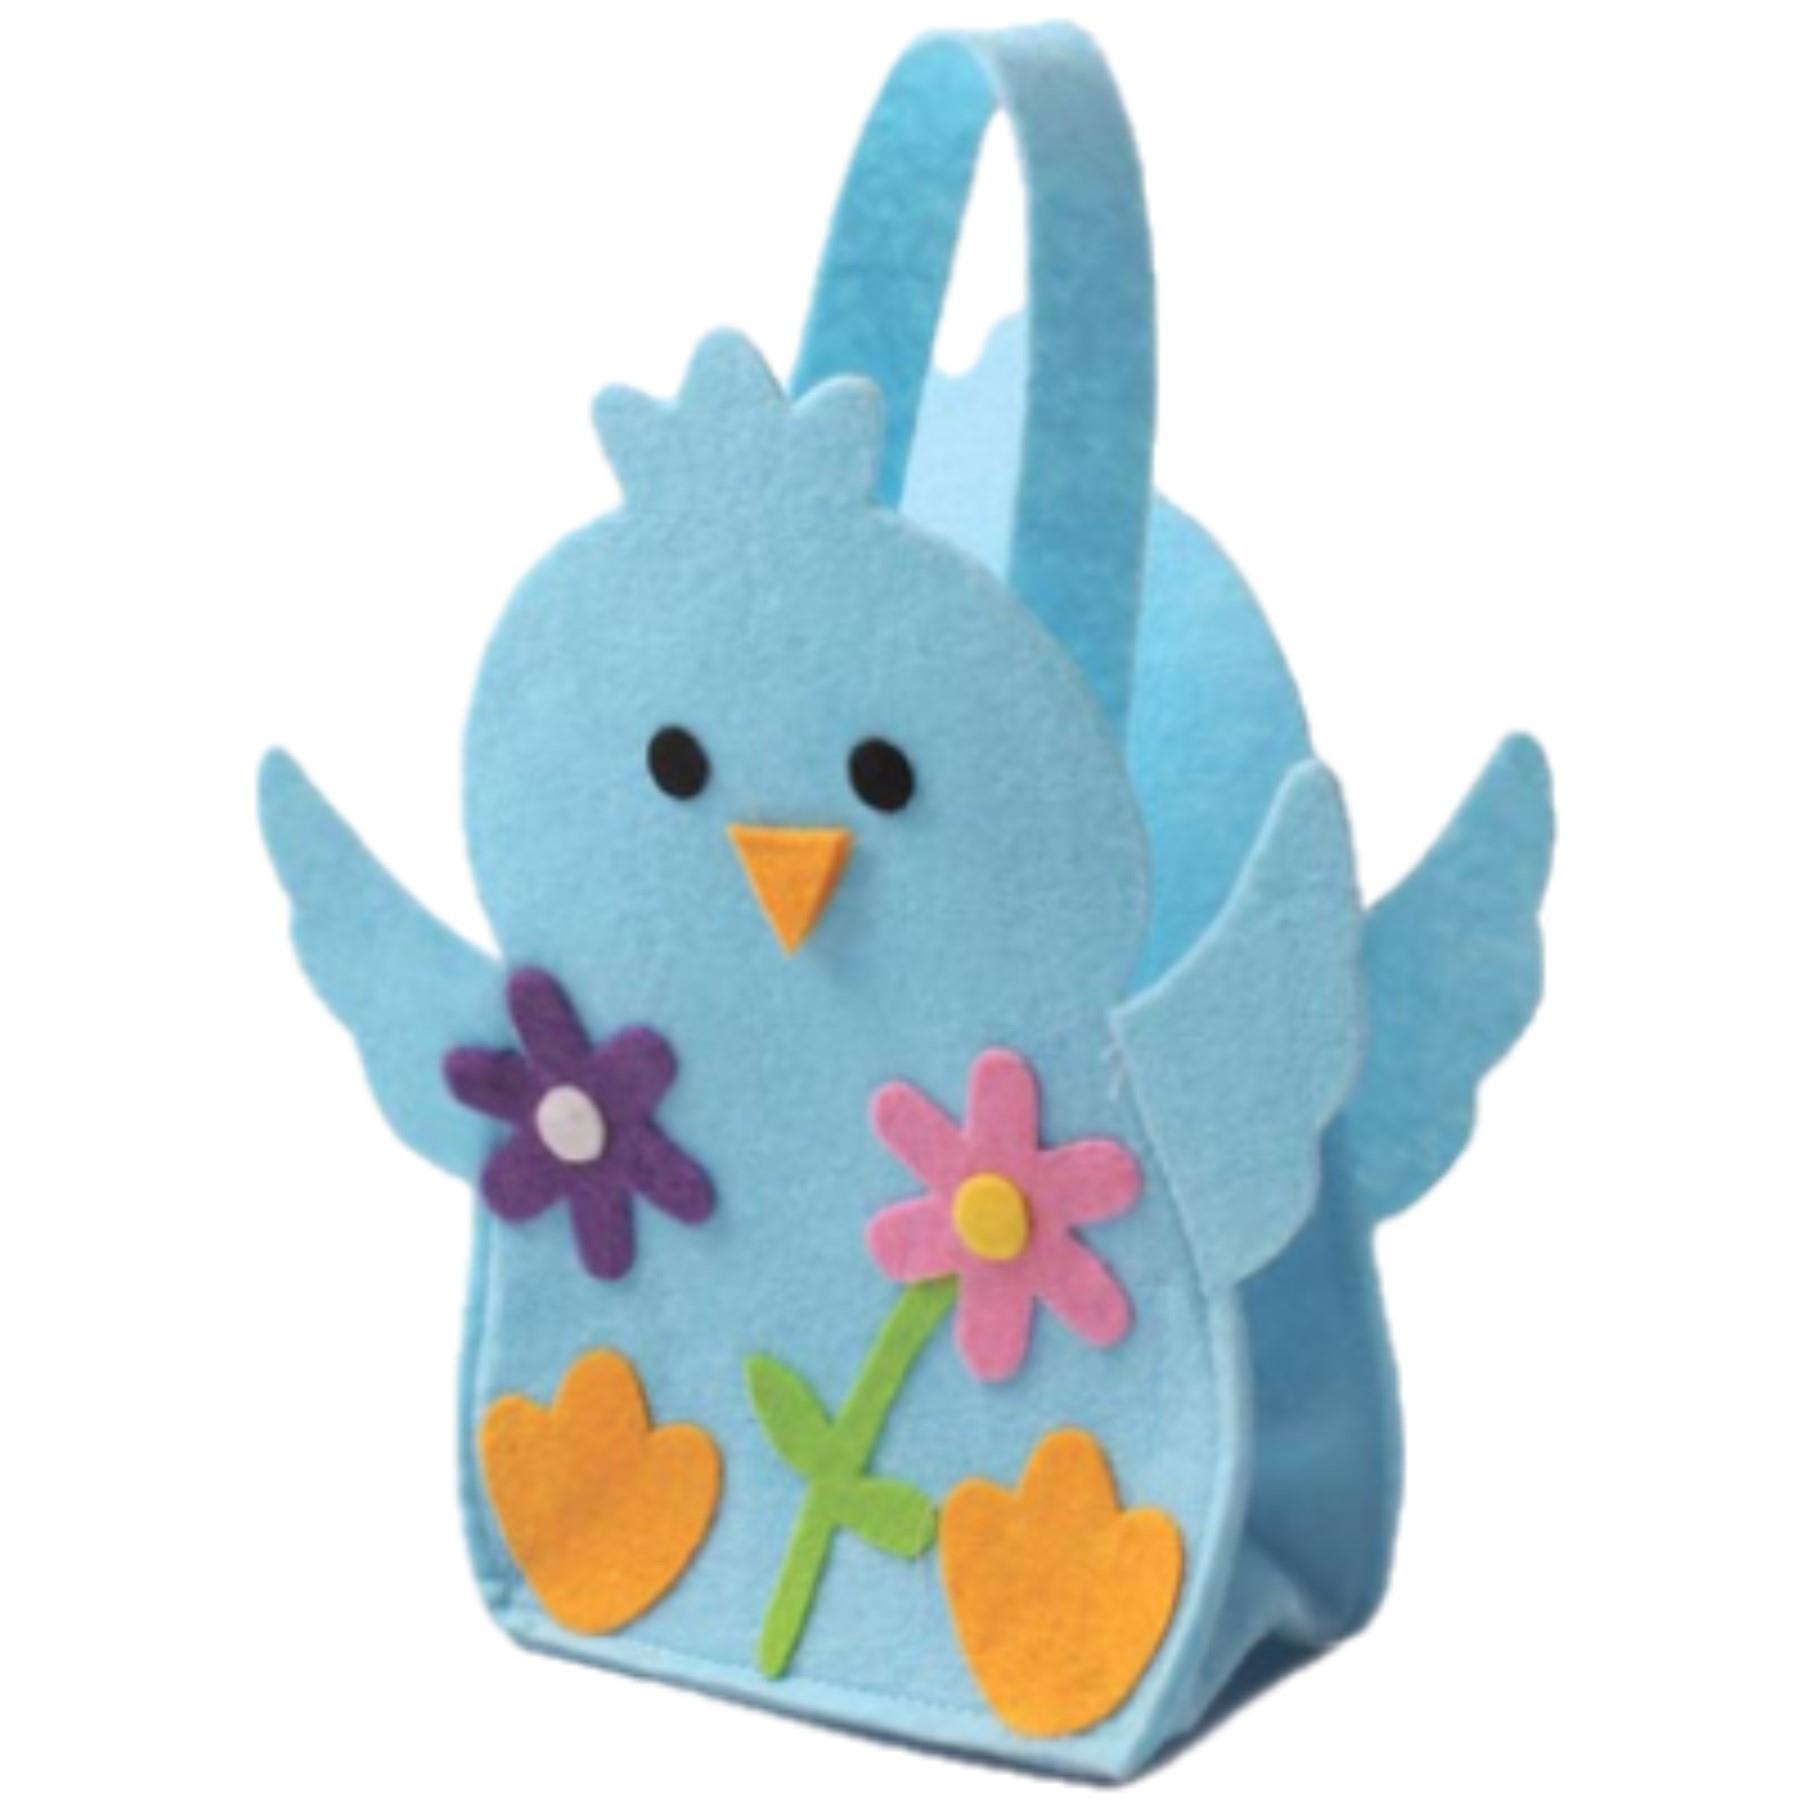 Easter Baskets, Buckets, Accessories - Felt Chick Bag - Blue